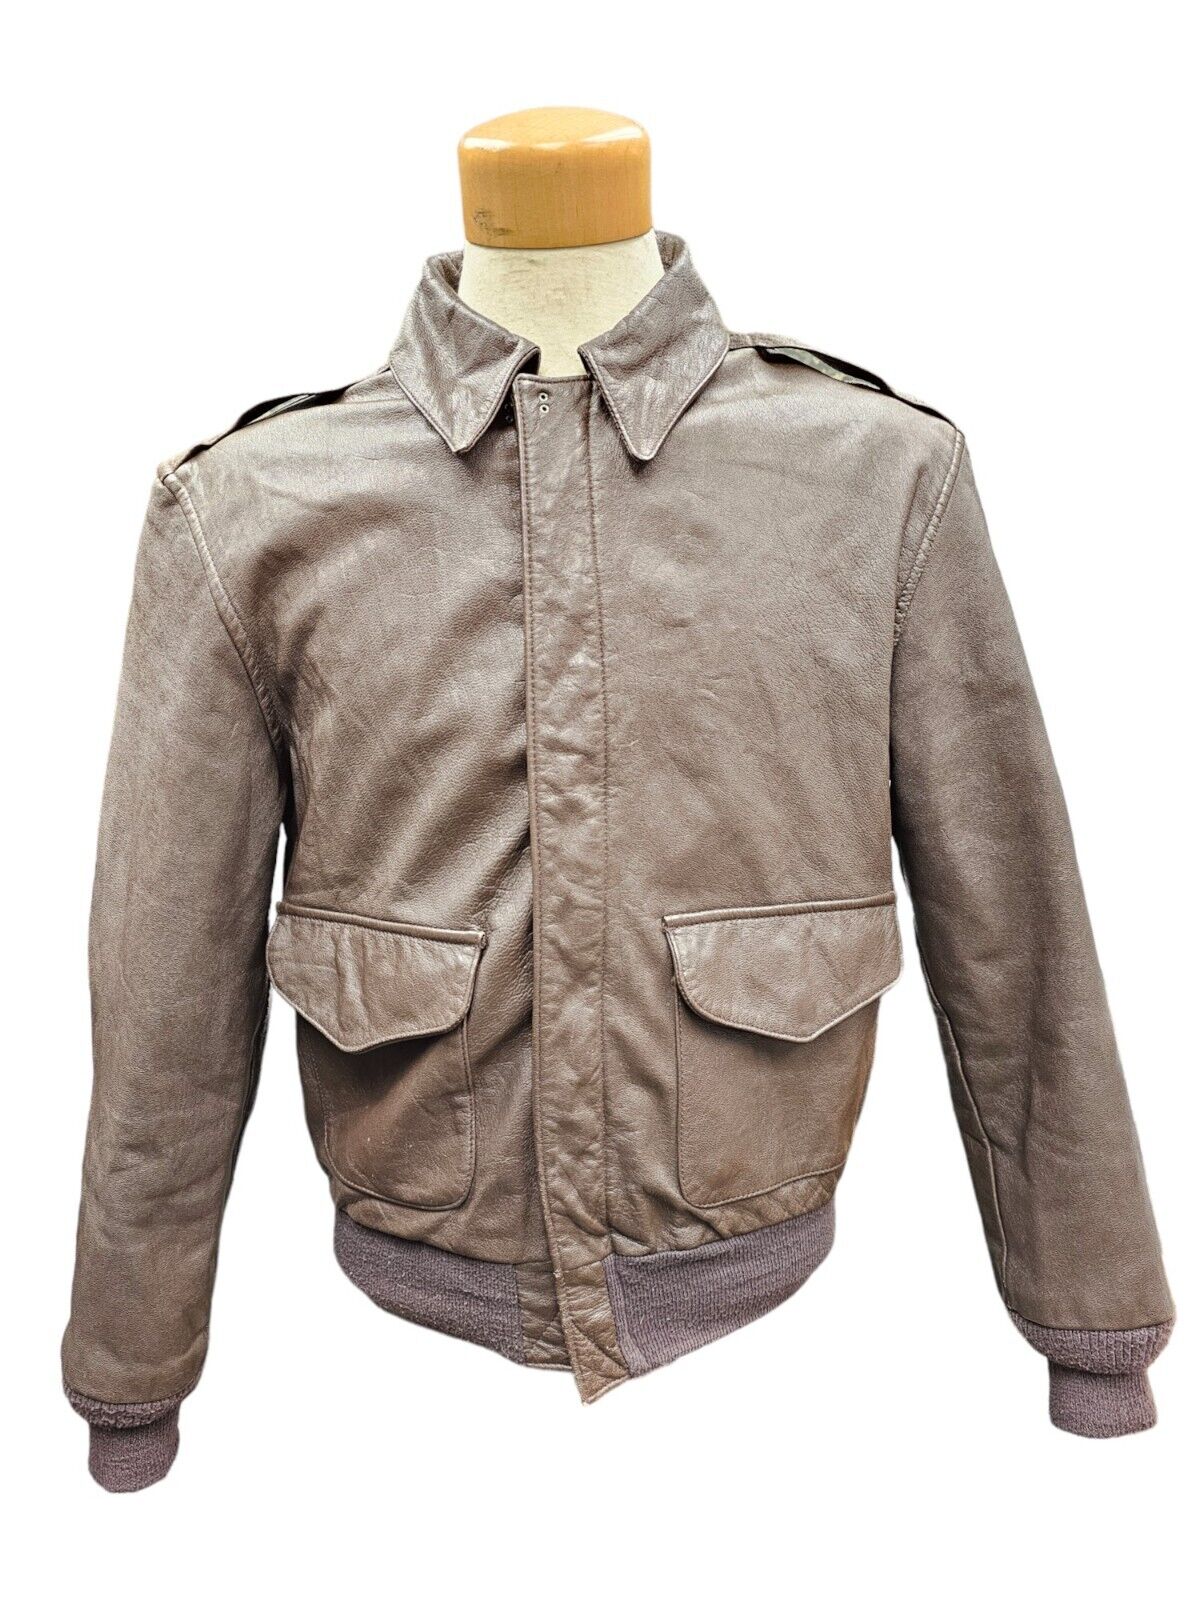 Vintage U.S. Armed Forces Cooper A-2 Brown Leather Jacket